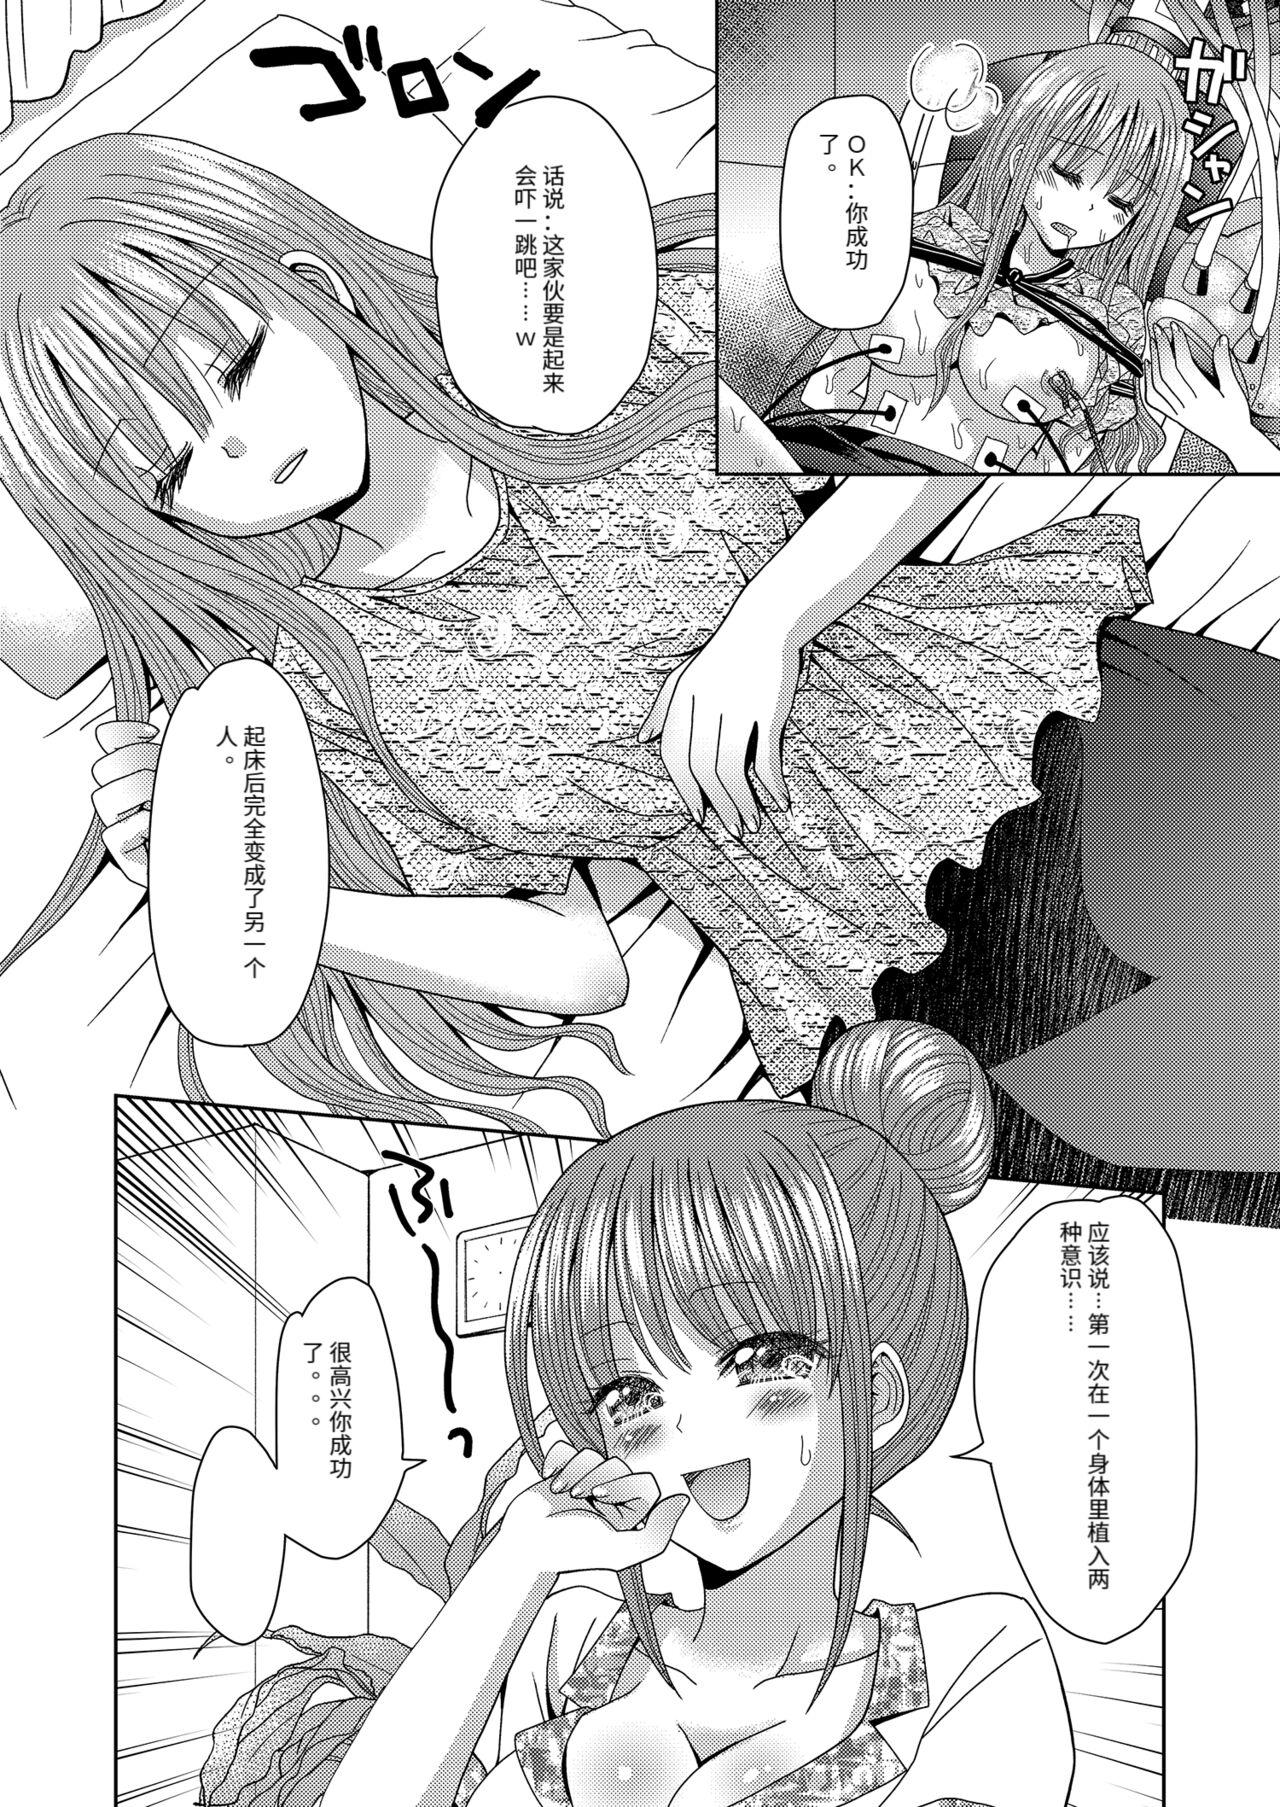 Short Ore ga Watashi ni Naru Tame no Biyou Salon 3 - Original Stretching - Page 8